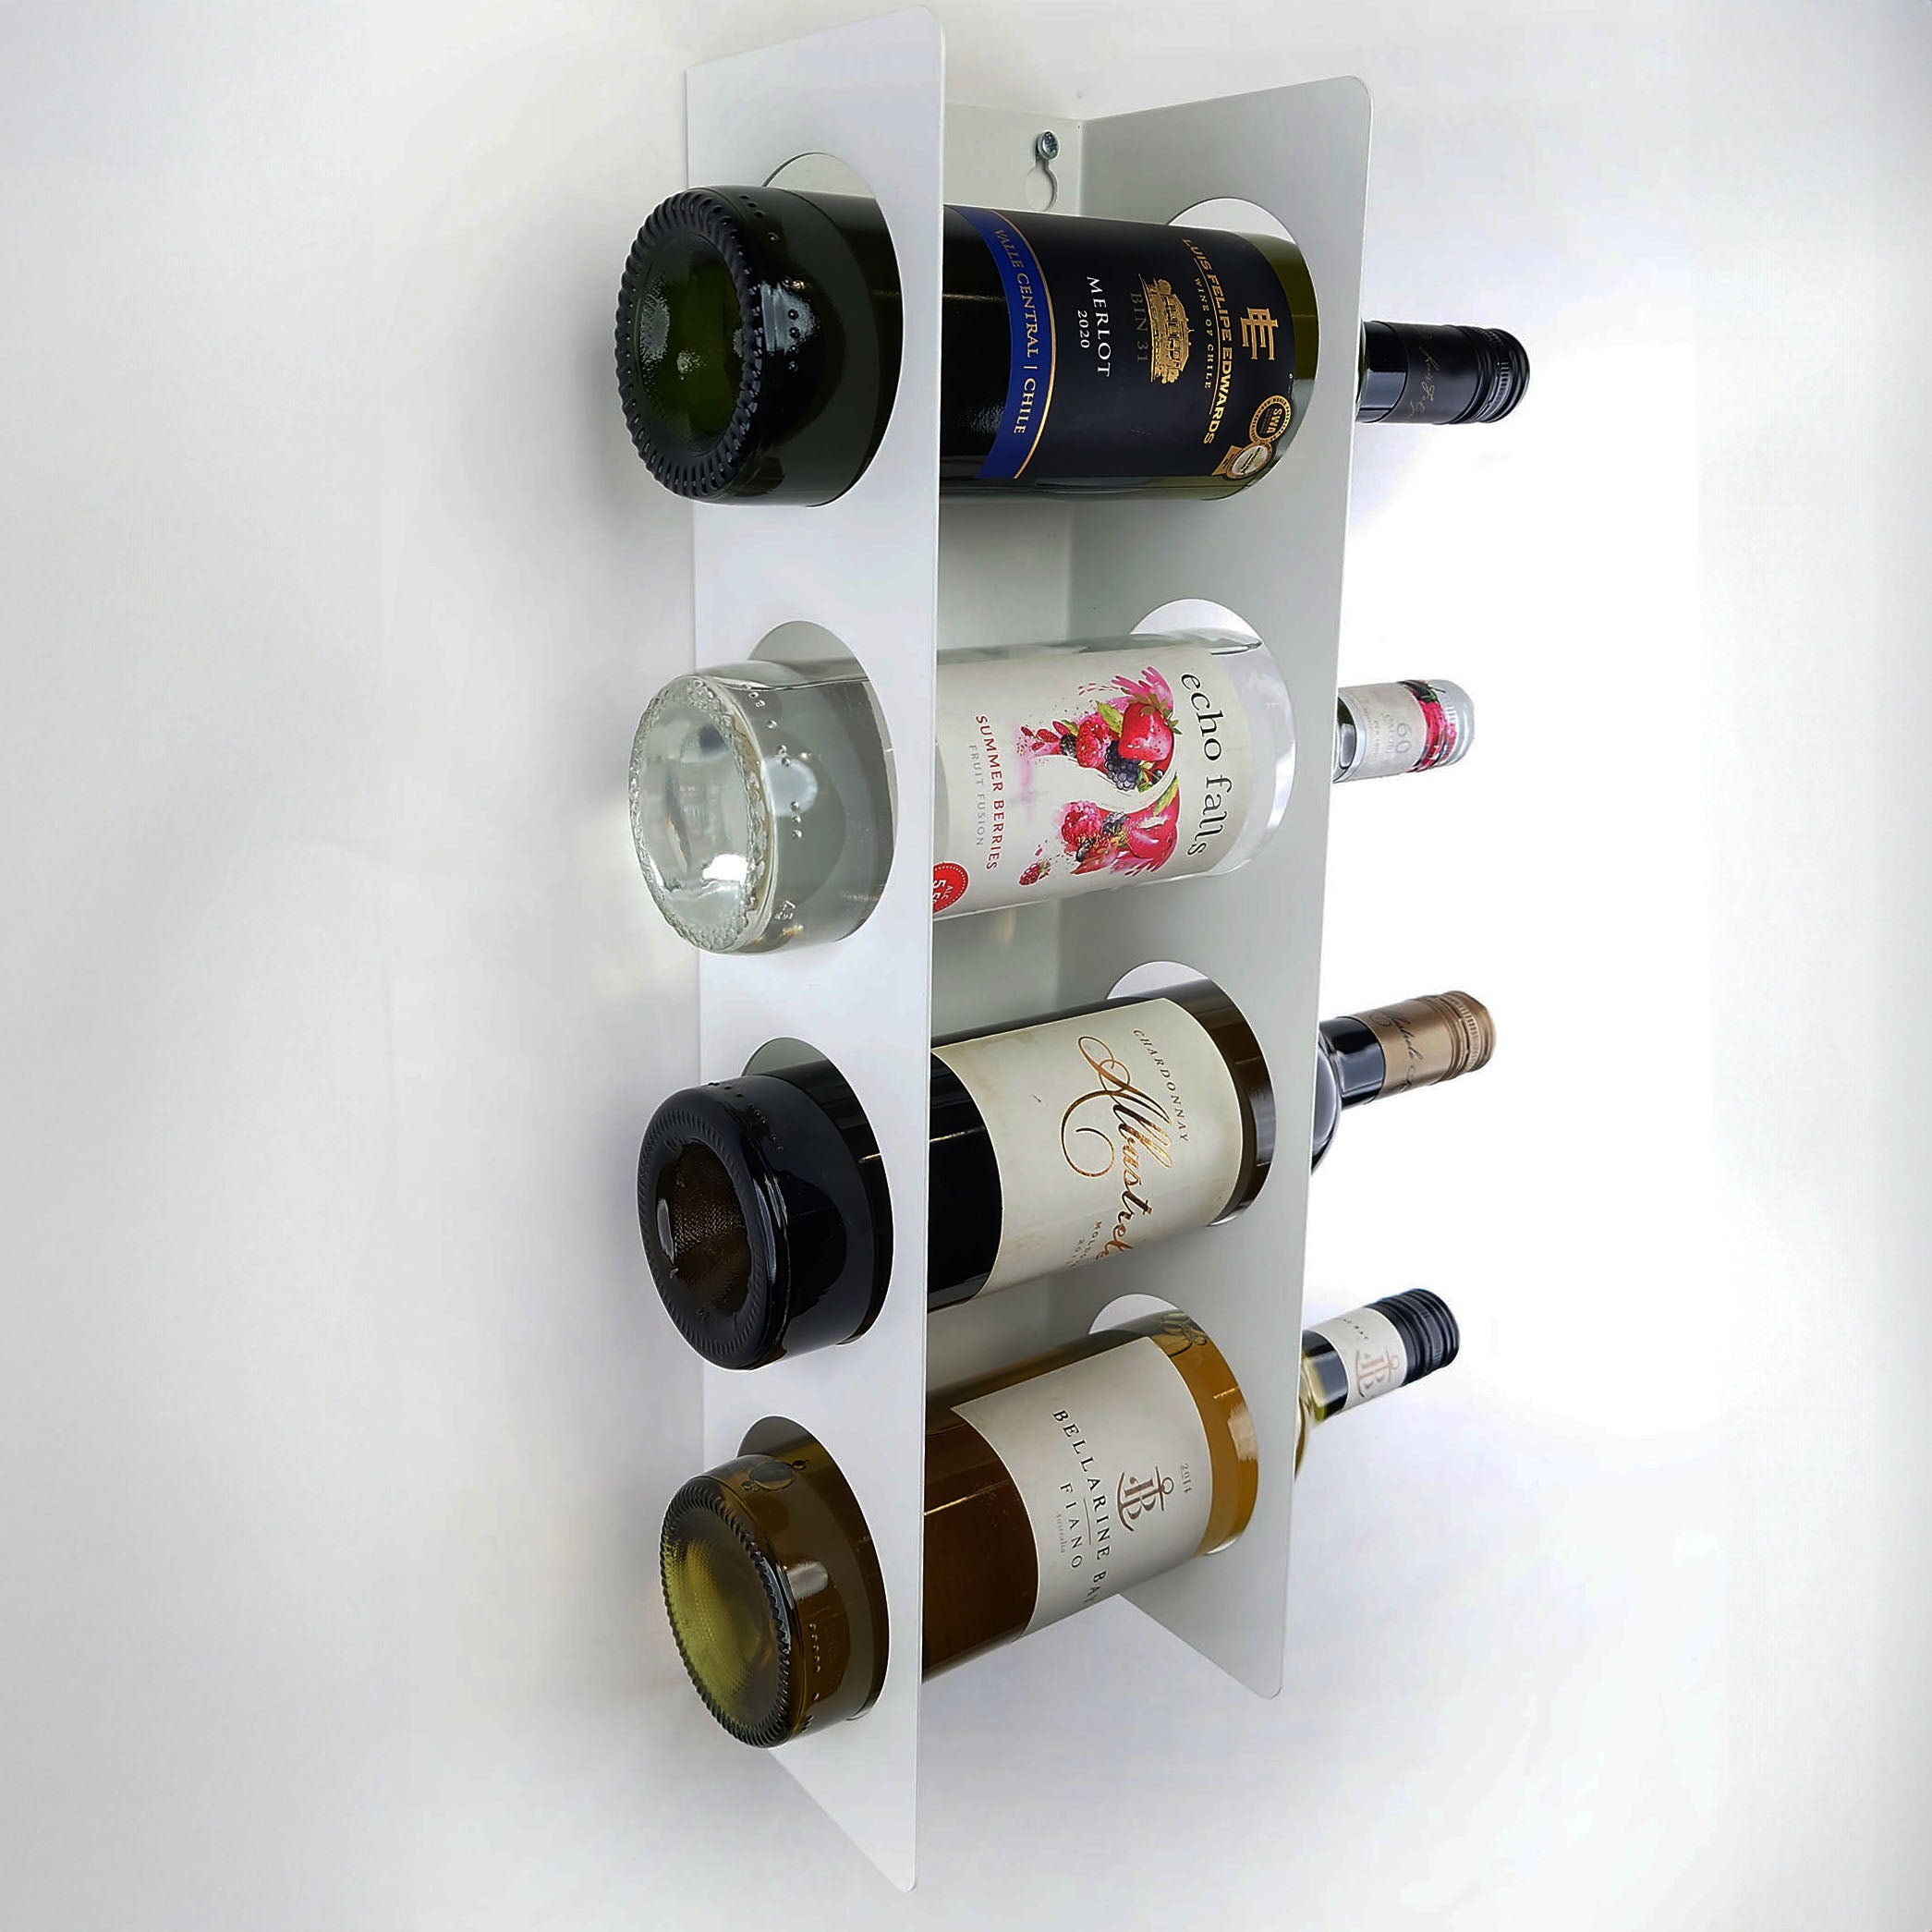 Wall Mount Wine Rack (4-7 Bottle Capacity)